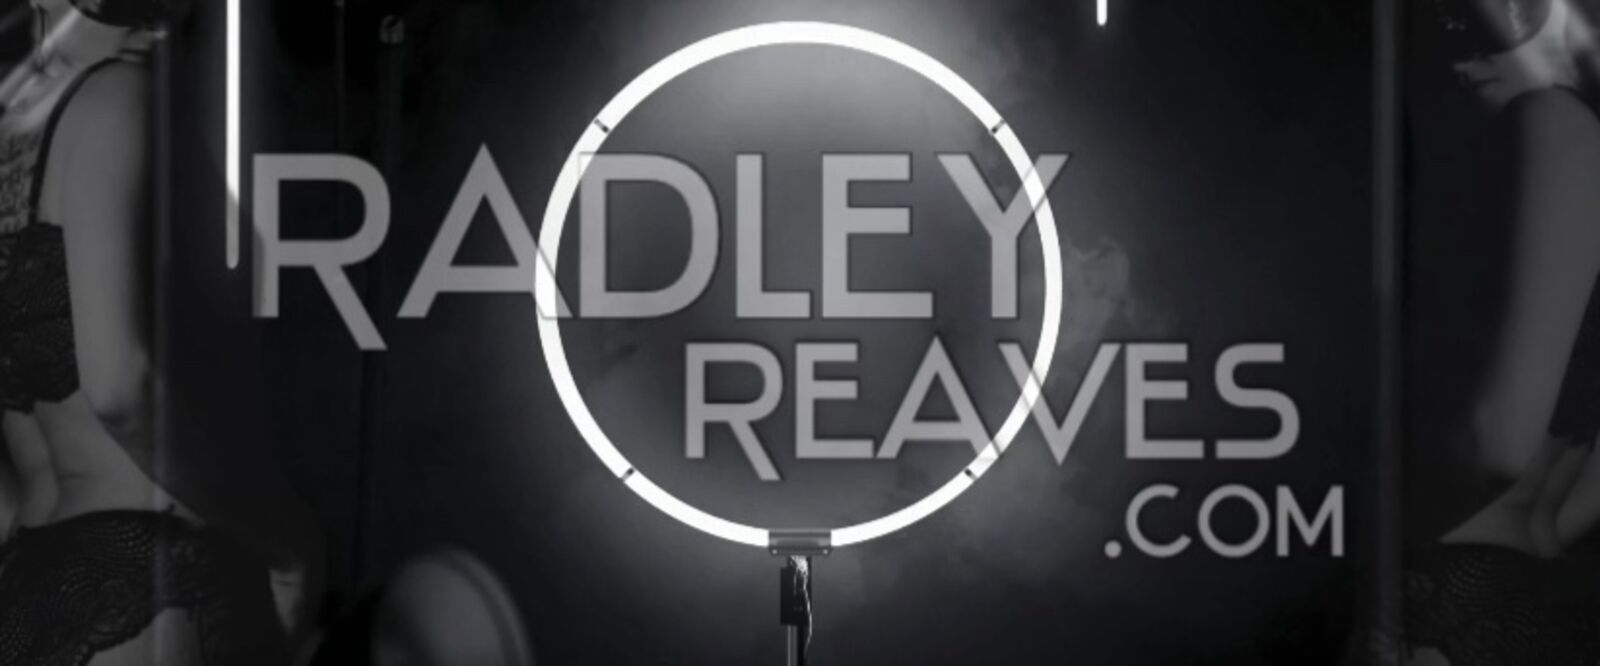 See Radley Reaves profile